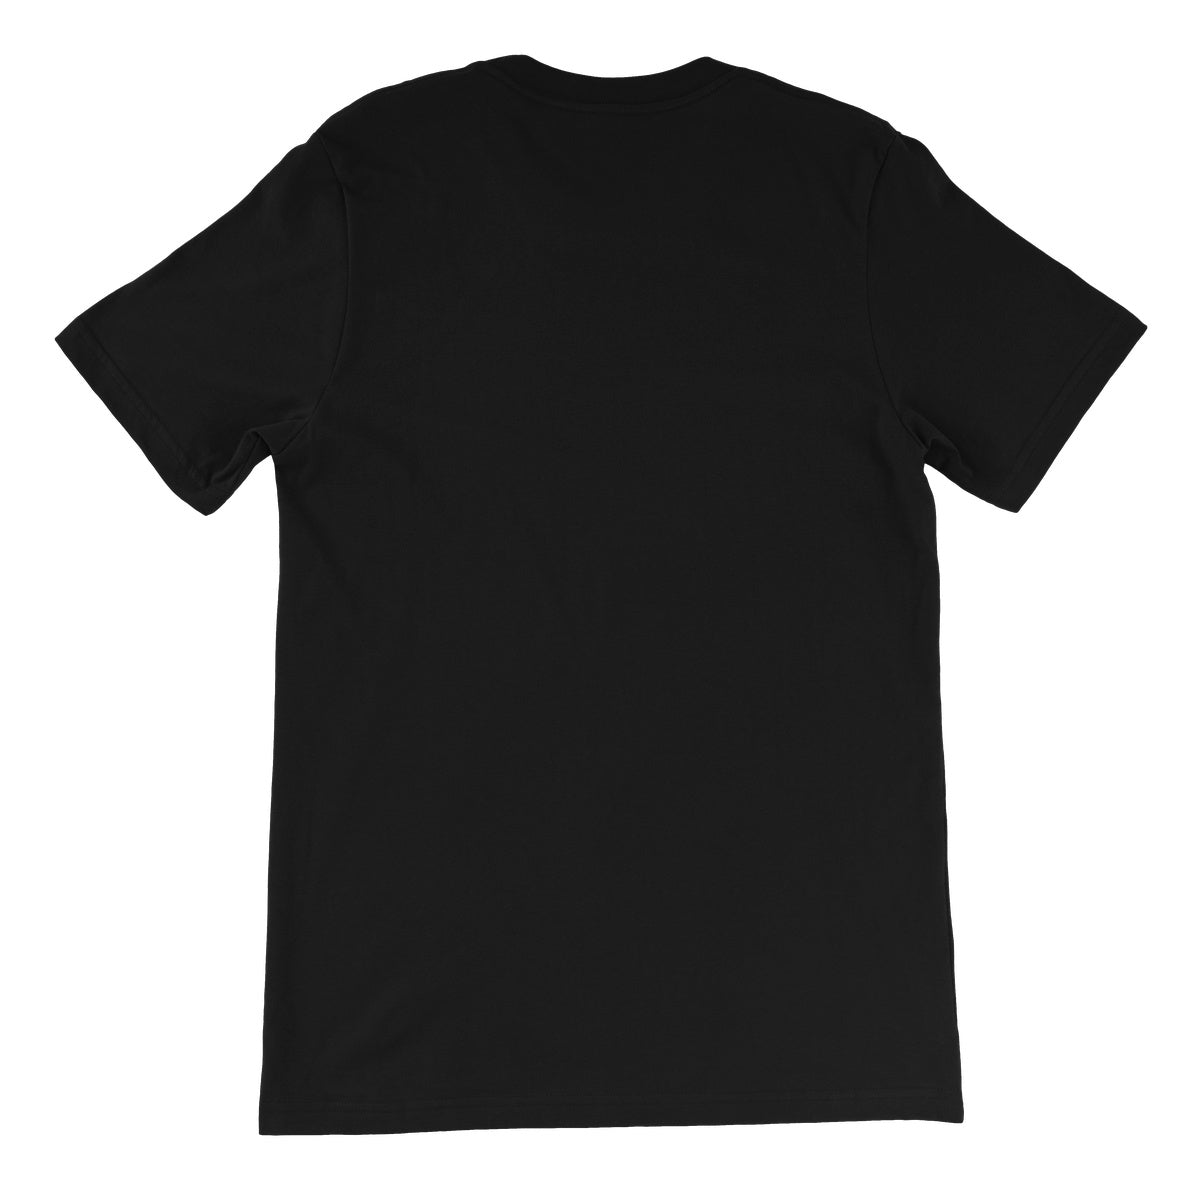 TNT Extreme Wrestling Merseyside Massacre Unisex Short Sleeve T-Shirt